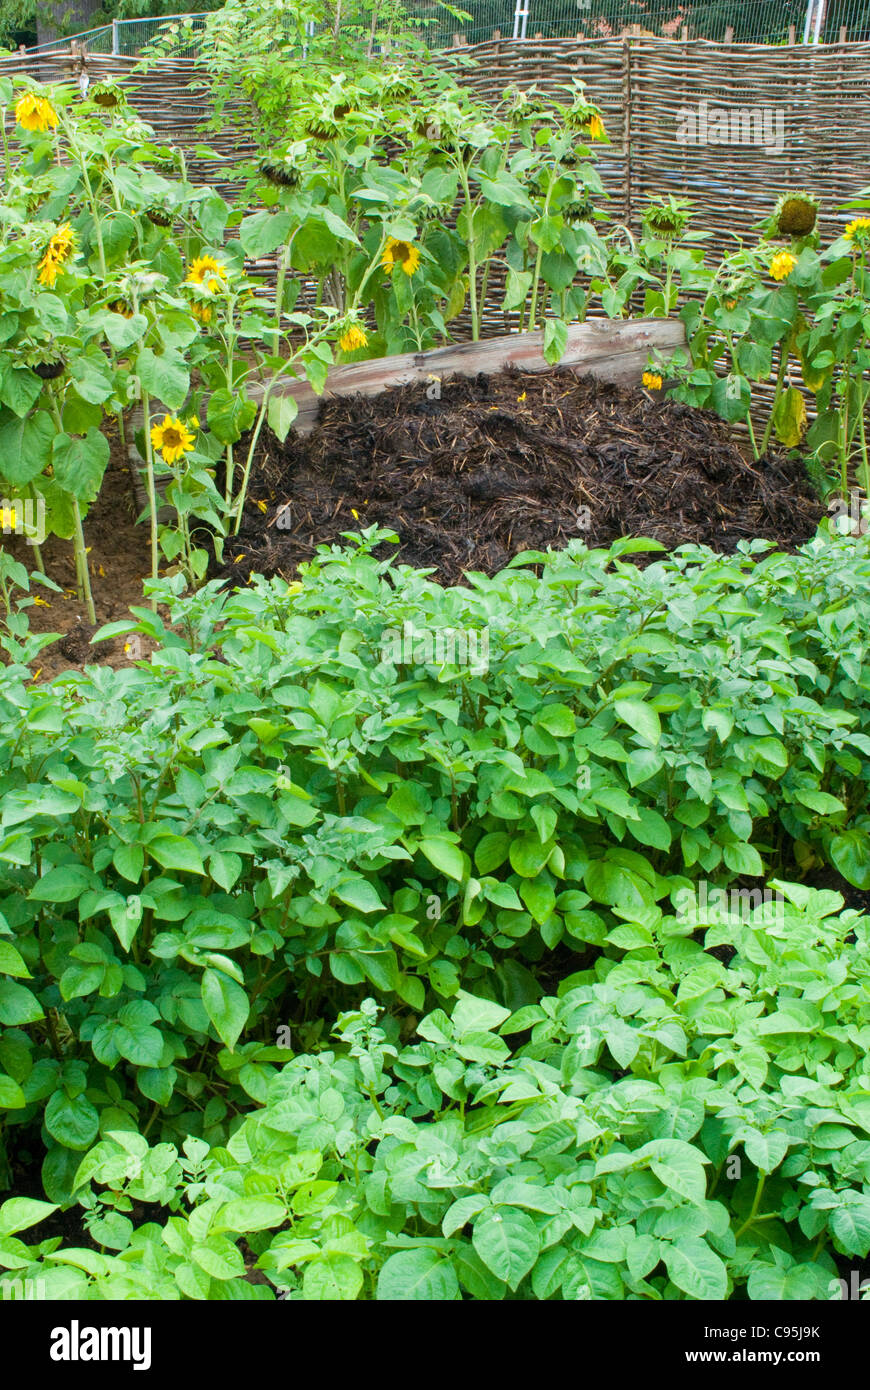 Kompostierte Misthaufen + Kartoffel Pflanzen Gemüse und Sonnenblumen, Boden Nährstoffe organischen im Garten schöne Blumen wieder aufzufüllen Stockfoto